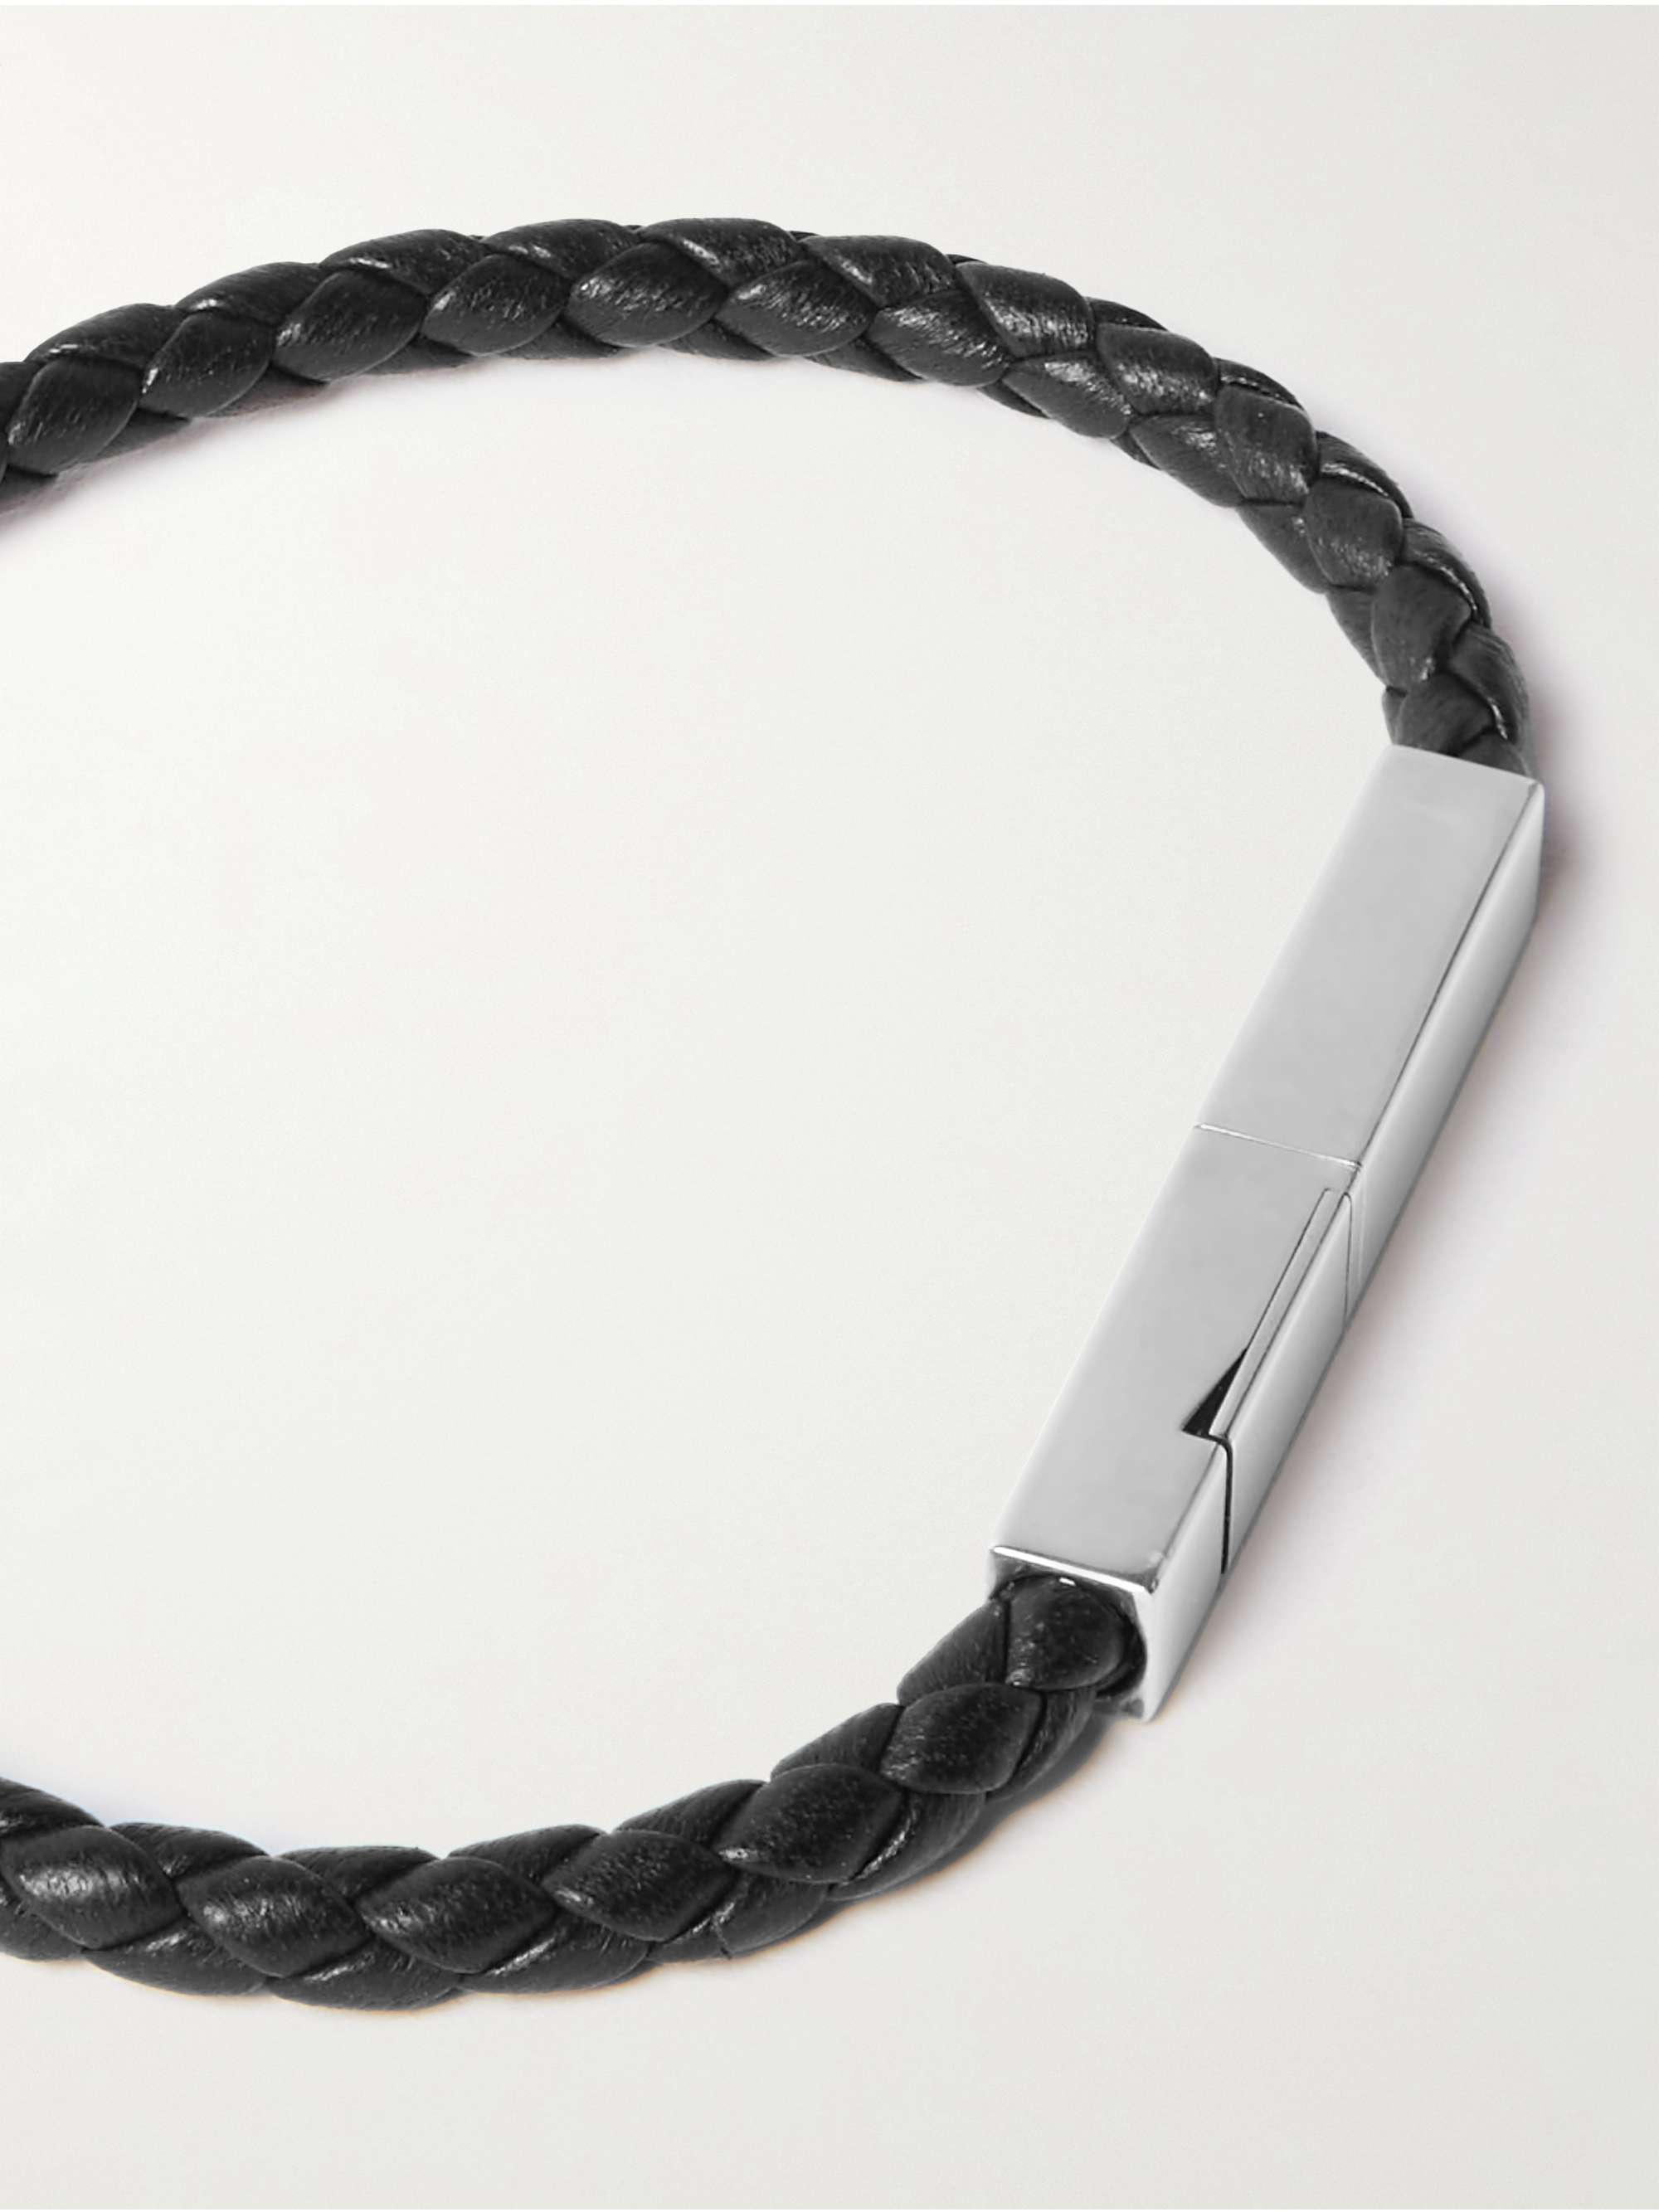 Joop Men's Bracelet Stainless Steel Woven Leather Black JPBR10669A215 | eBay